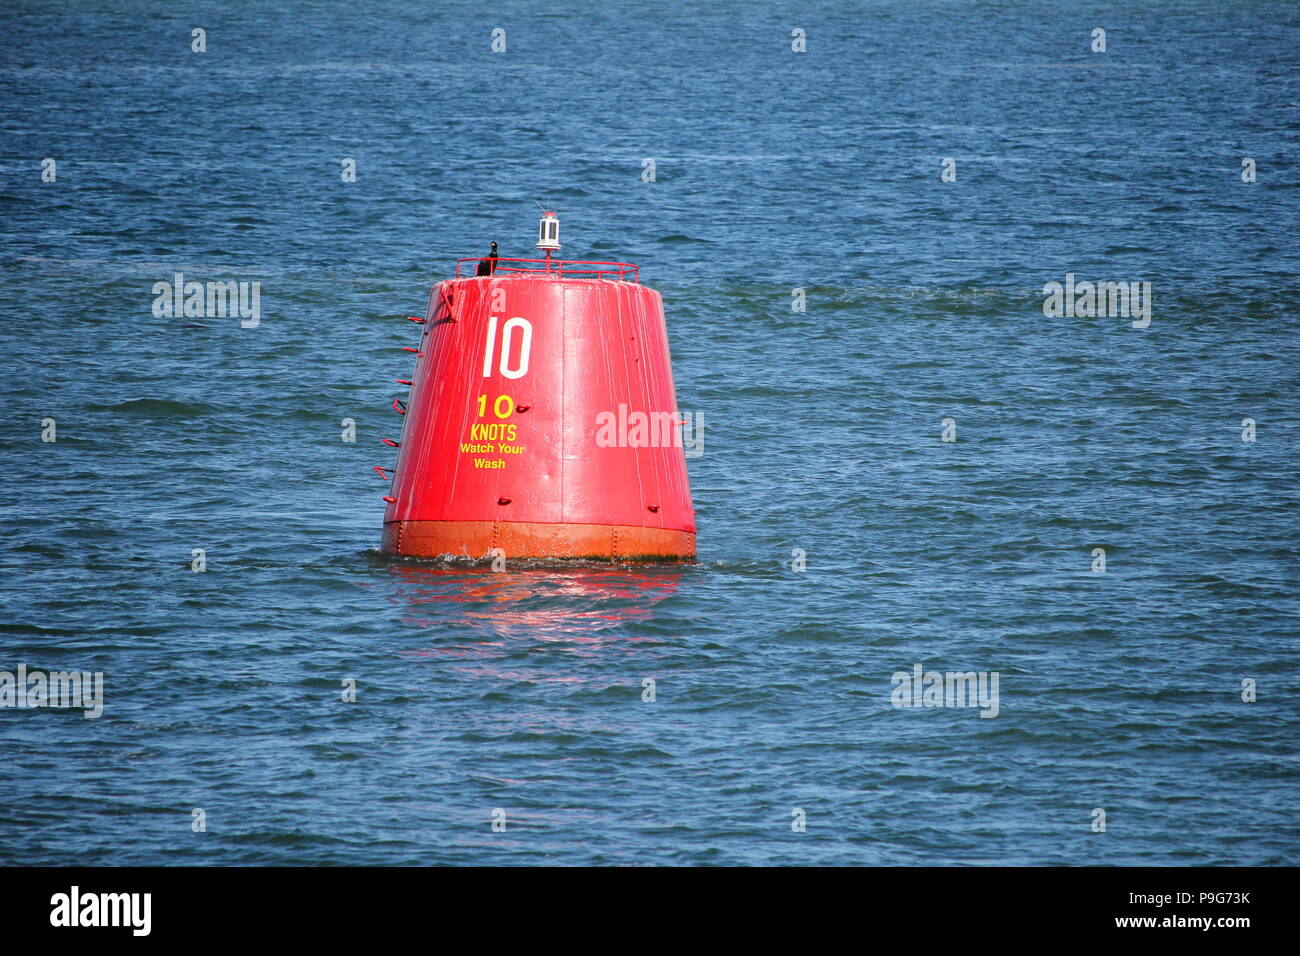 Bouée balise rouge avec limite de vitesse de 10 noeuds, flottant dans la  mer ou l'océan bleu Photo Stock - Alamy